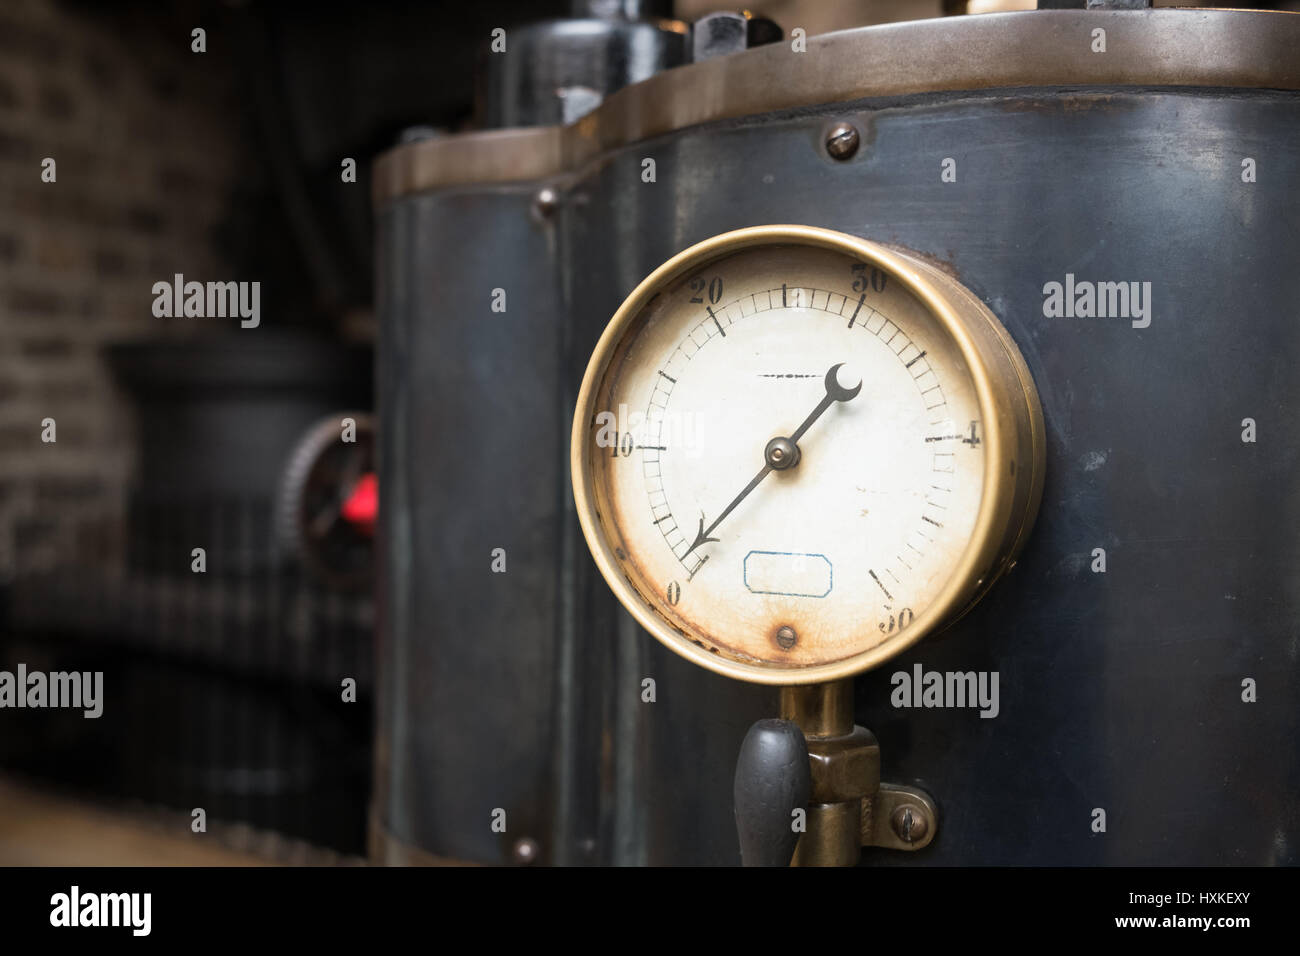 Manómetro de presión industrial antiguo. Foto de stock